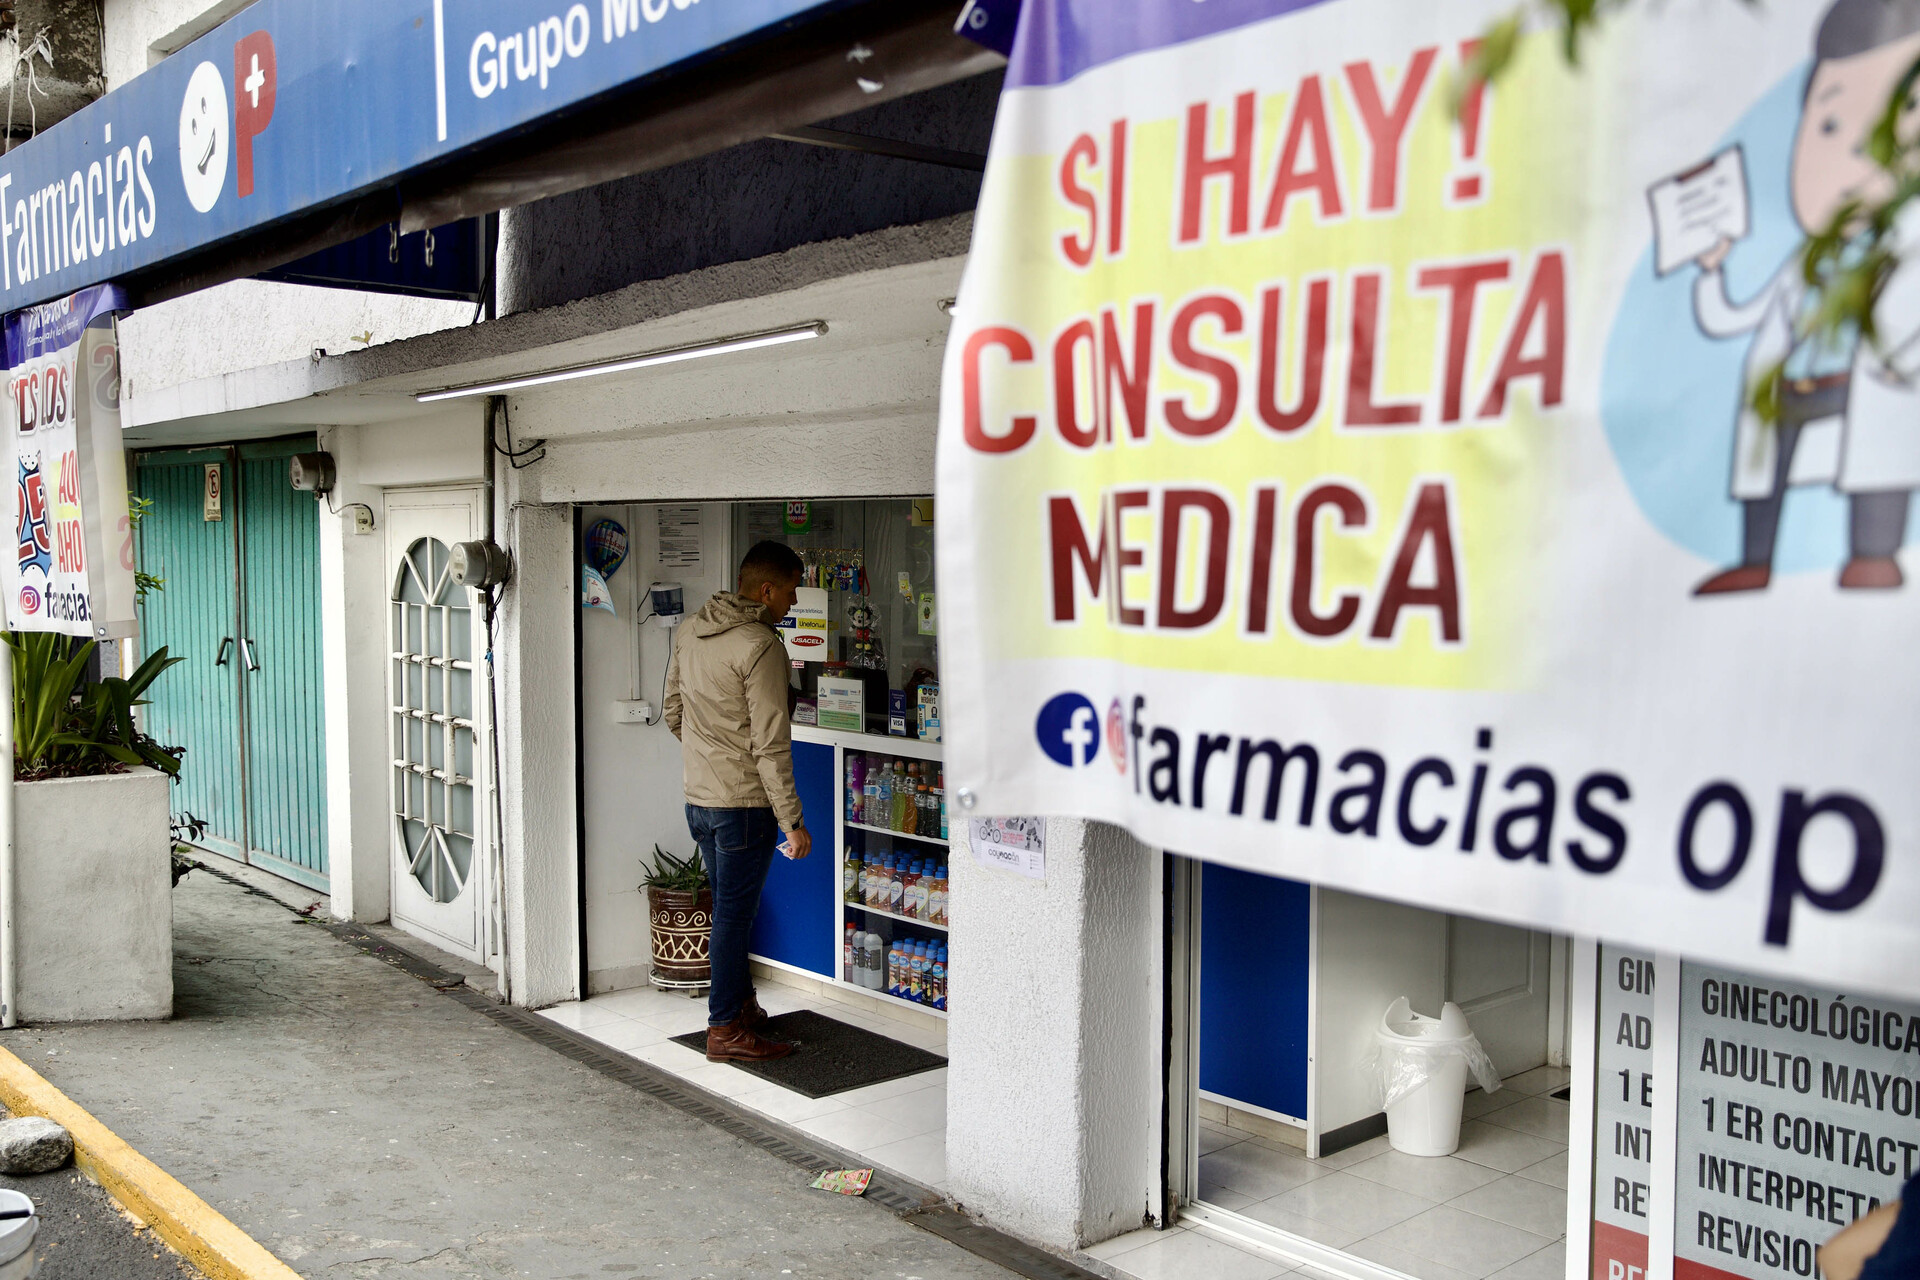 Cofepris enlista a farmacias con irregularidades